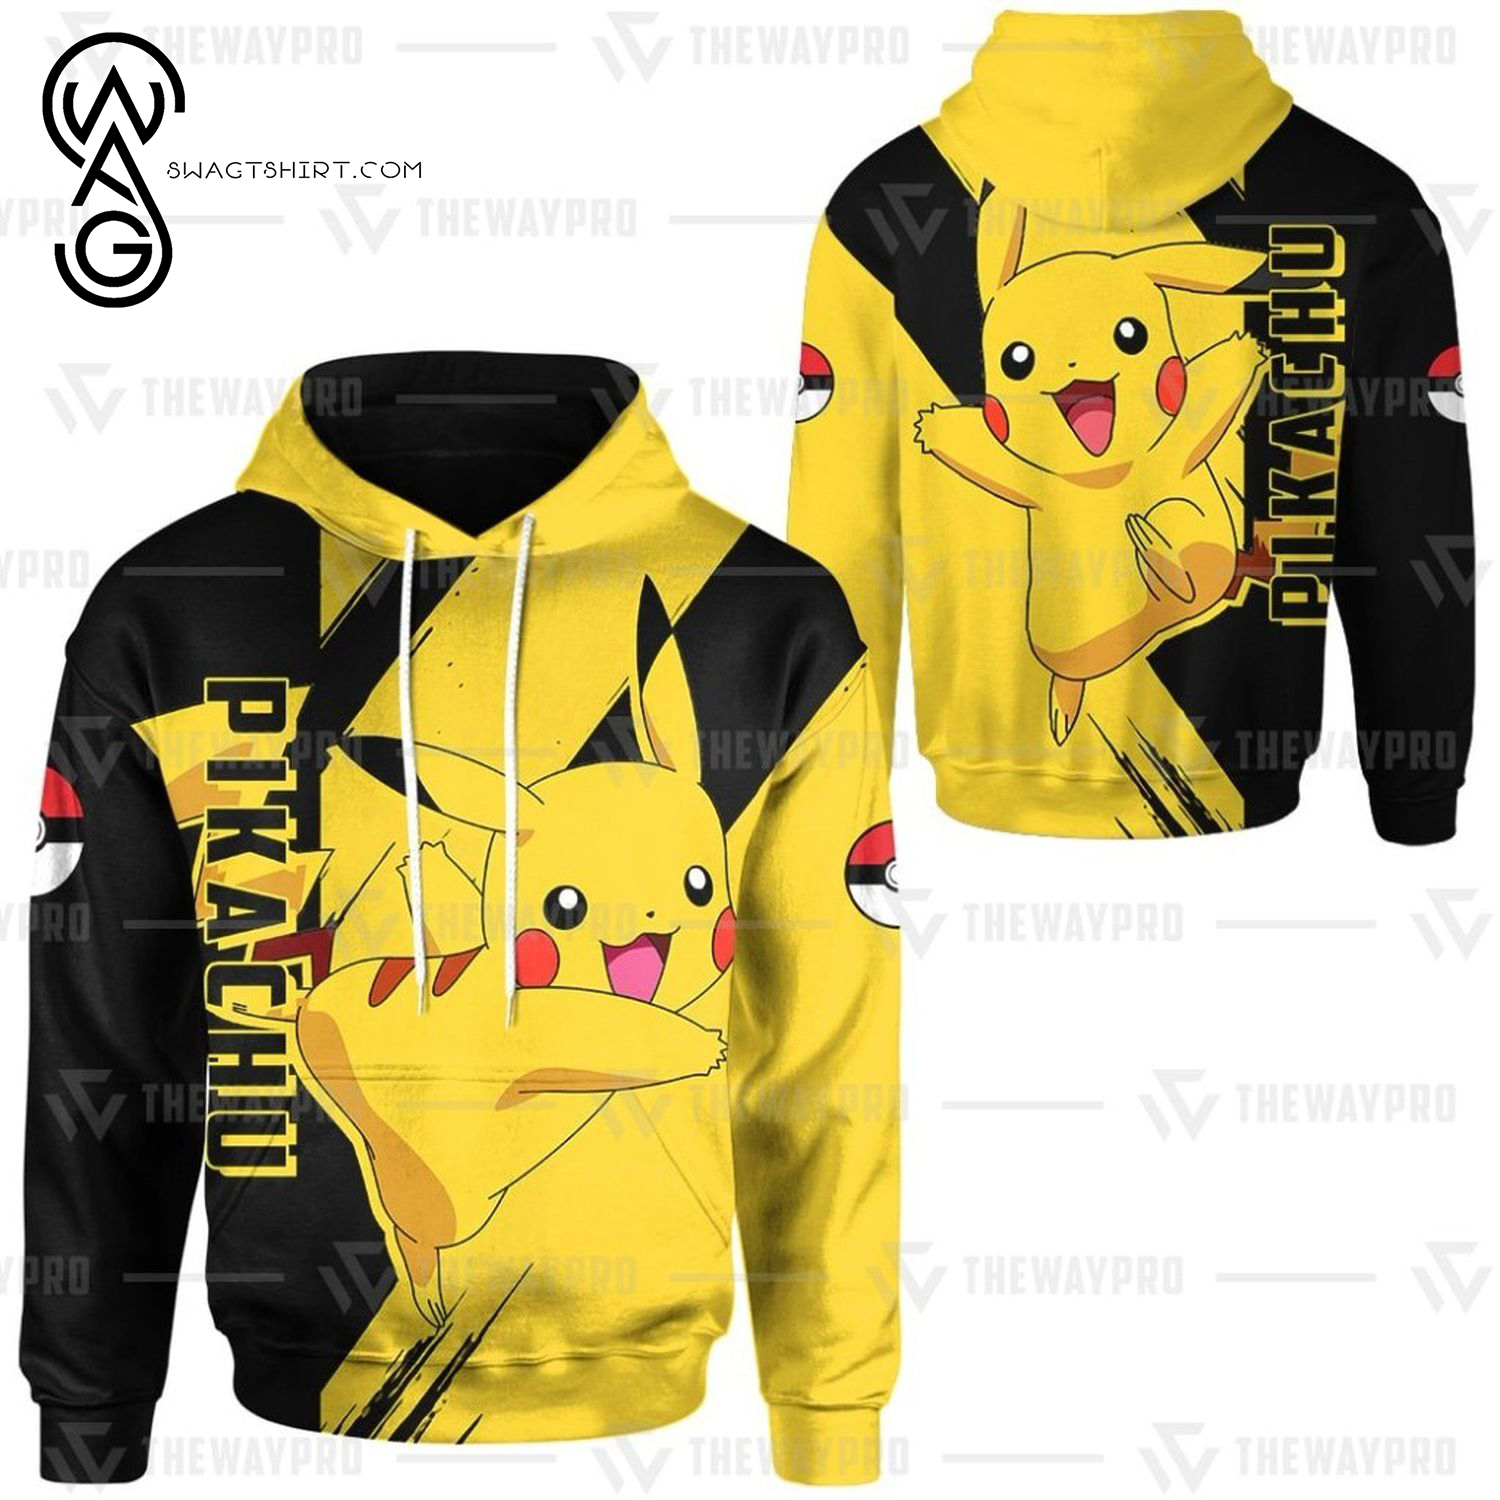 Anime Pokemon Pikachu All Over Print Shirt